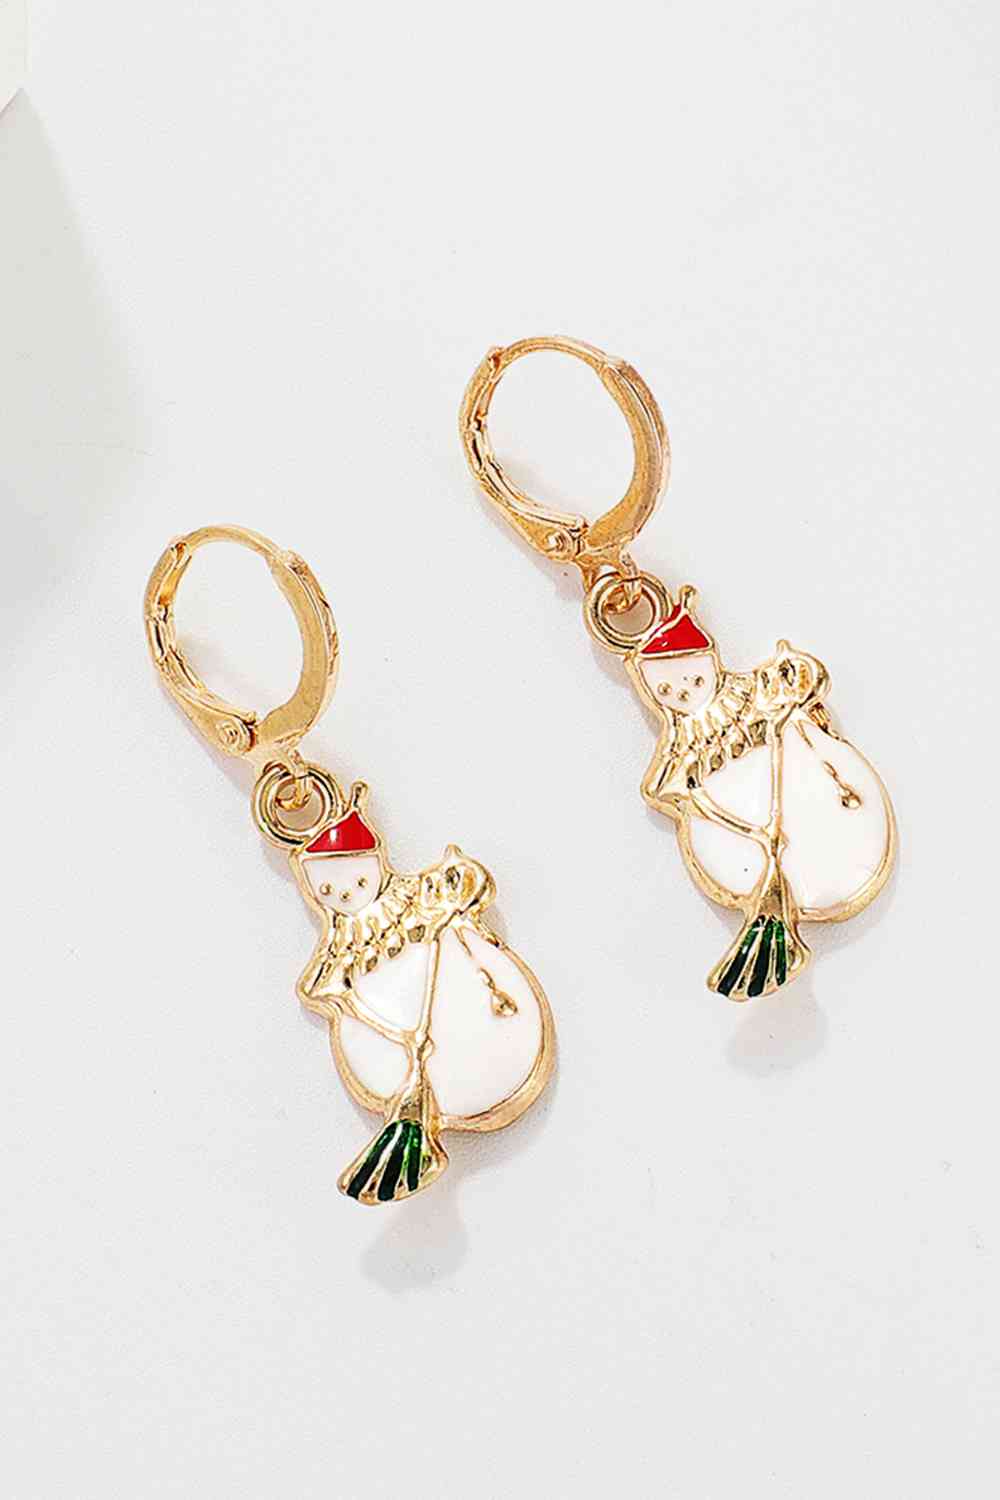 Christmas Theme Alloy Earrings - Women’s Jewelry - Earrings - 23 - 2024